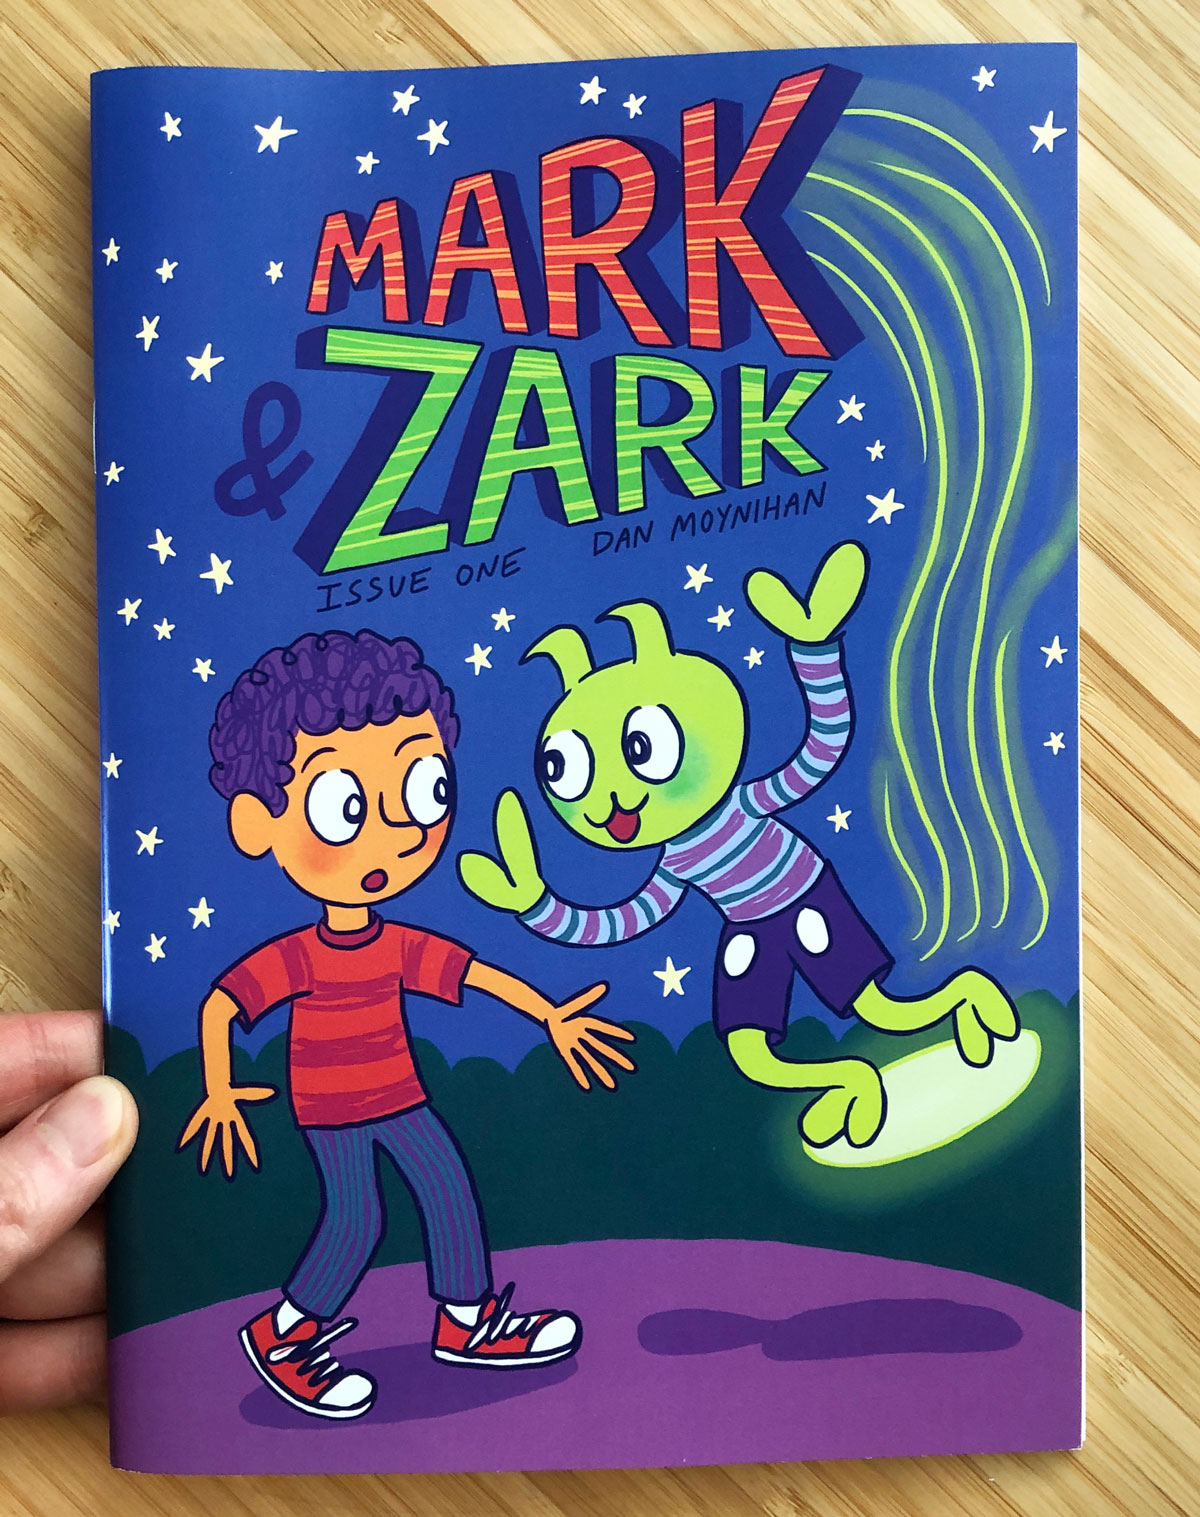 Mark & Zark No. 1